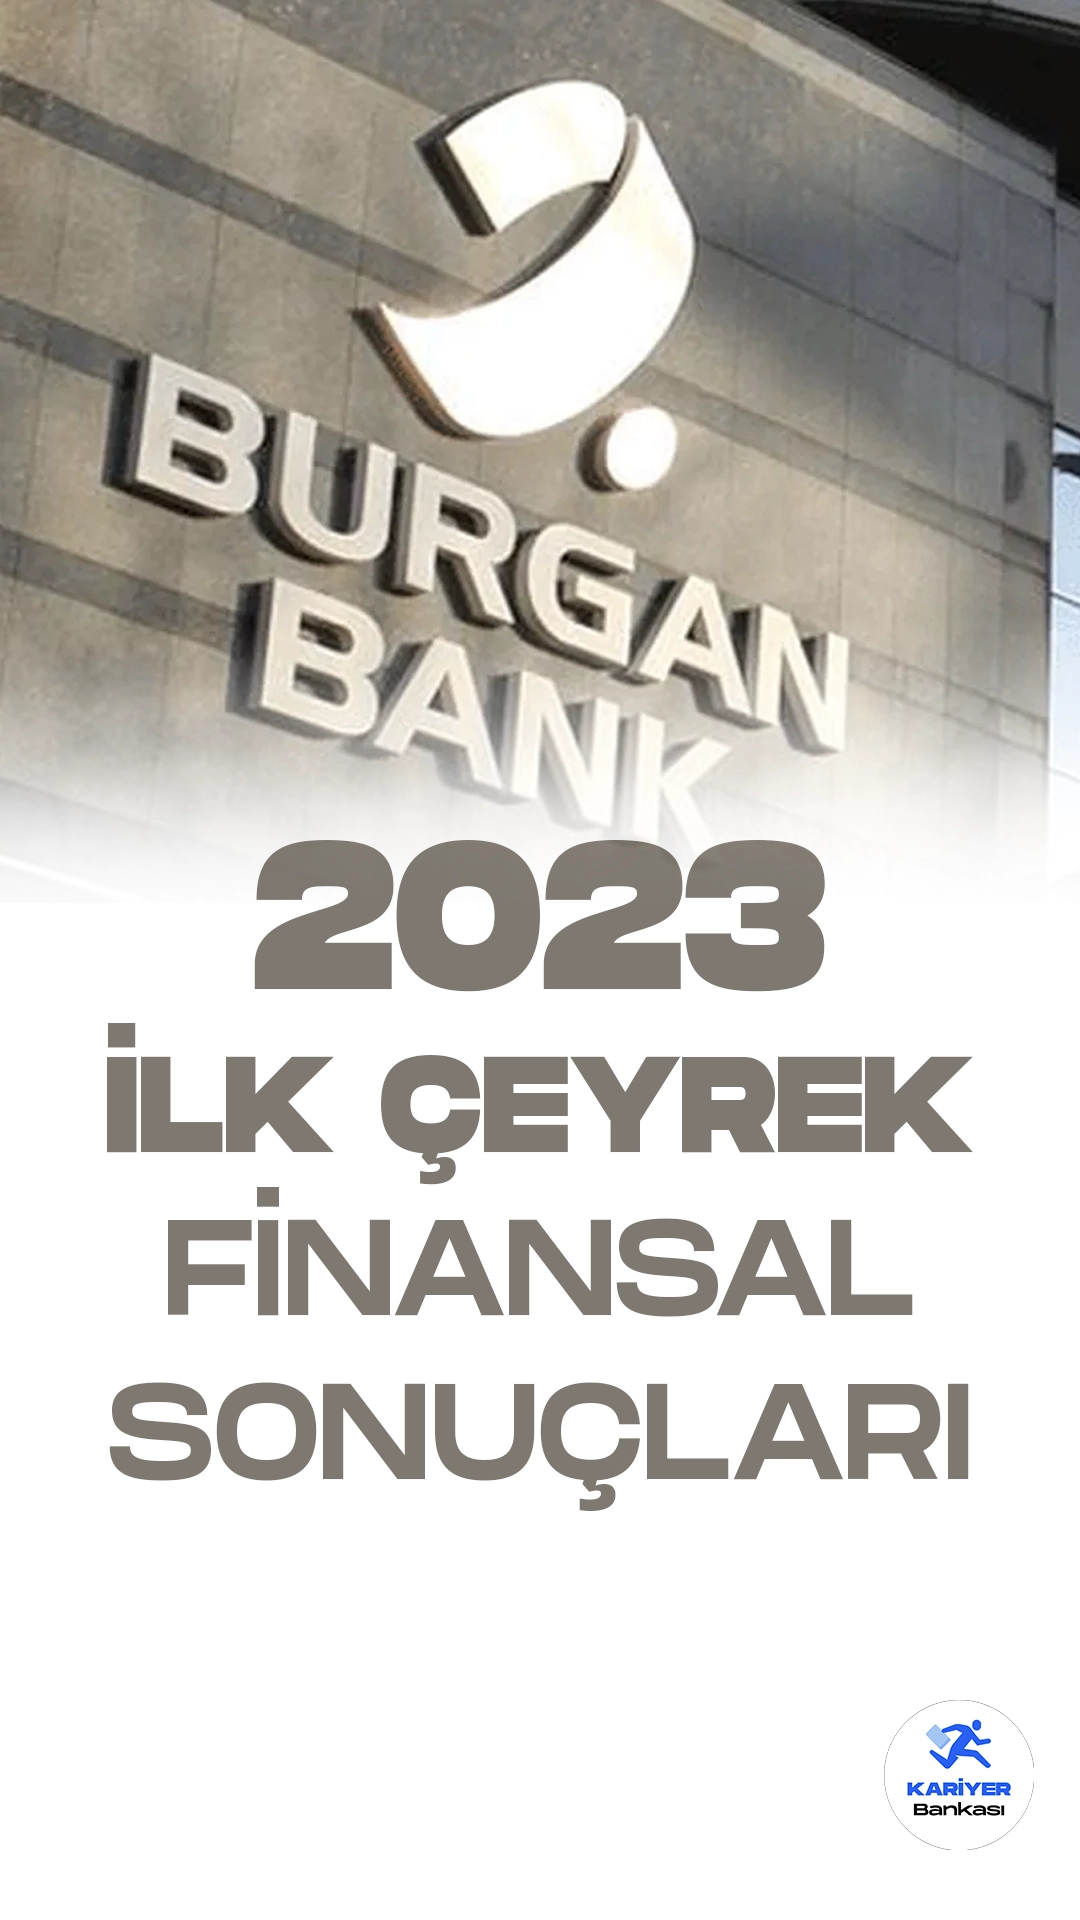 Burgan Bank, 2023 yılının ilk çeyreğine ilişkin finansal sonuçlarını açıkladı. Aktarılan bilgilere göre, banka bu dönemde 720 milyon TL vergi öncesi kâr ve 650 milyon TL net kâr elde etti.